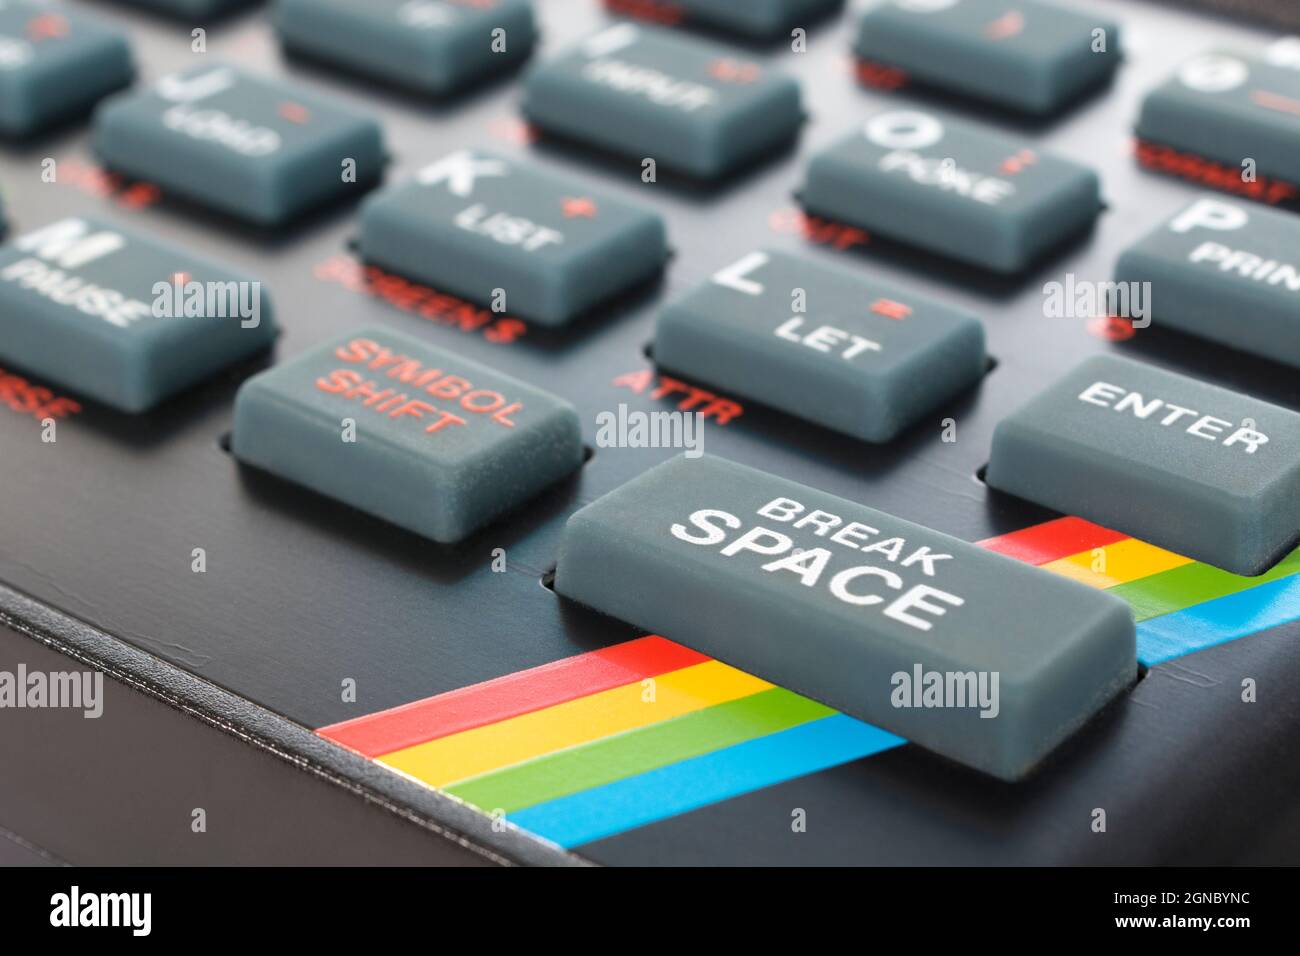 Primo piano della tastiera Sinclair ZX Spectrum. Mettere a fuoco sul lato sinistro del tasto di comando dello SPAZIO DI INTERRUZIONE di base. Computer domestico vintage a 8 bit degli anni '80 (vedere le note). Foto Stock